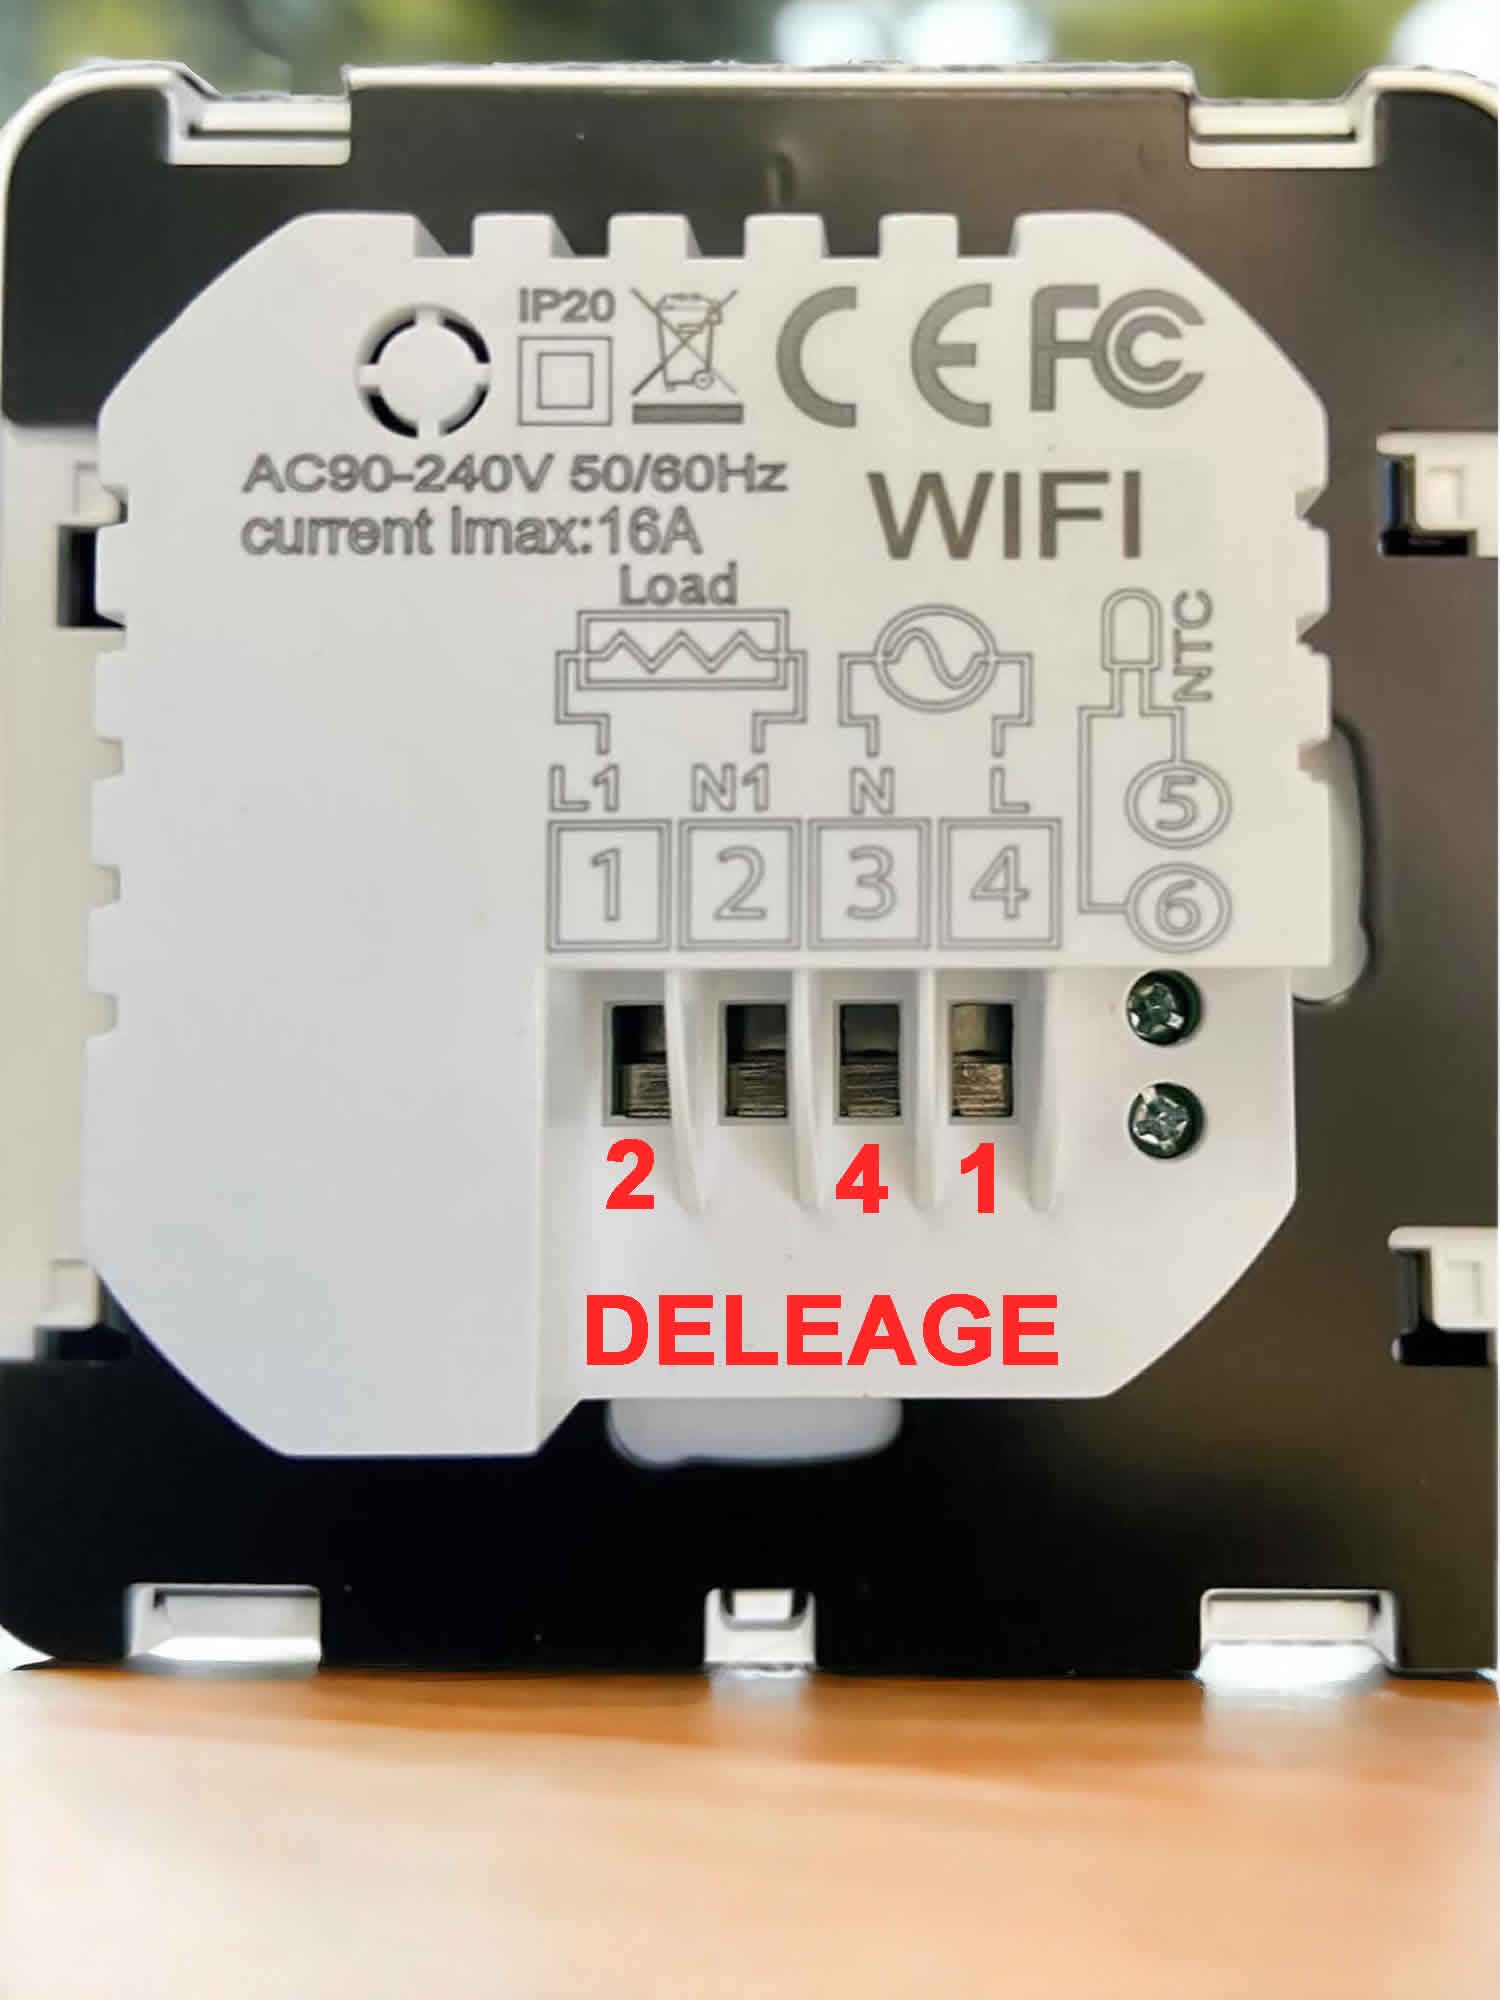 HEATIT CONTROLS - Thermostat Wi-Fi pour plancher chauffant électrique 16A